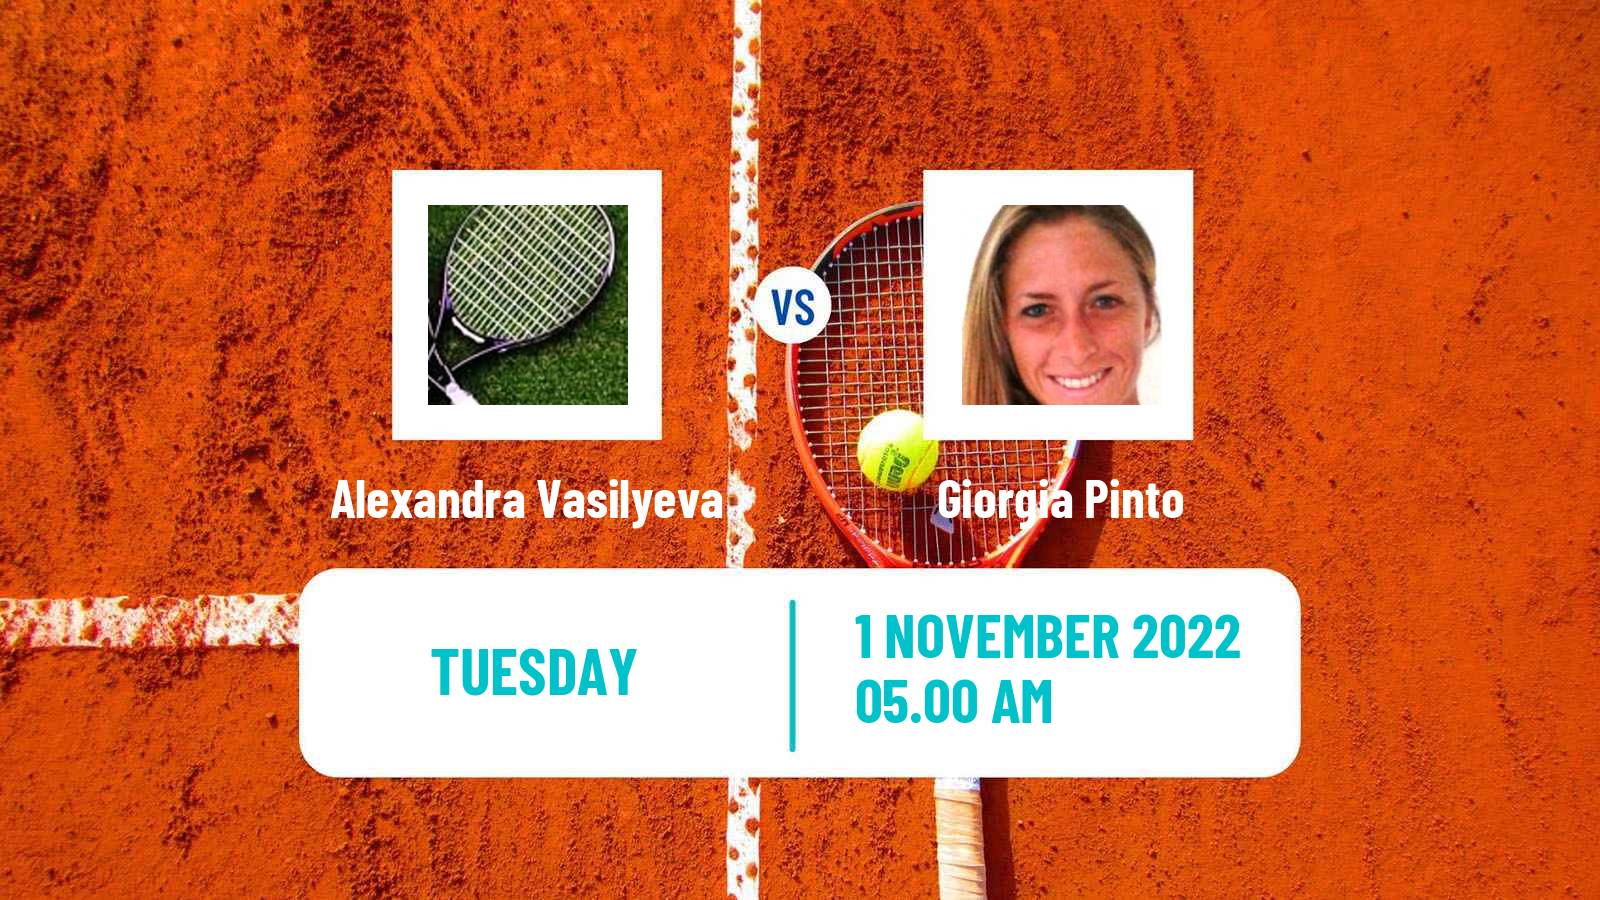 Tennis ITF Tournaments Alexandra Vasilyeva - Giorgia Pinto